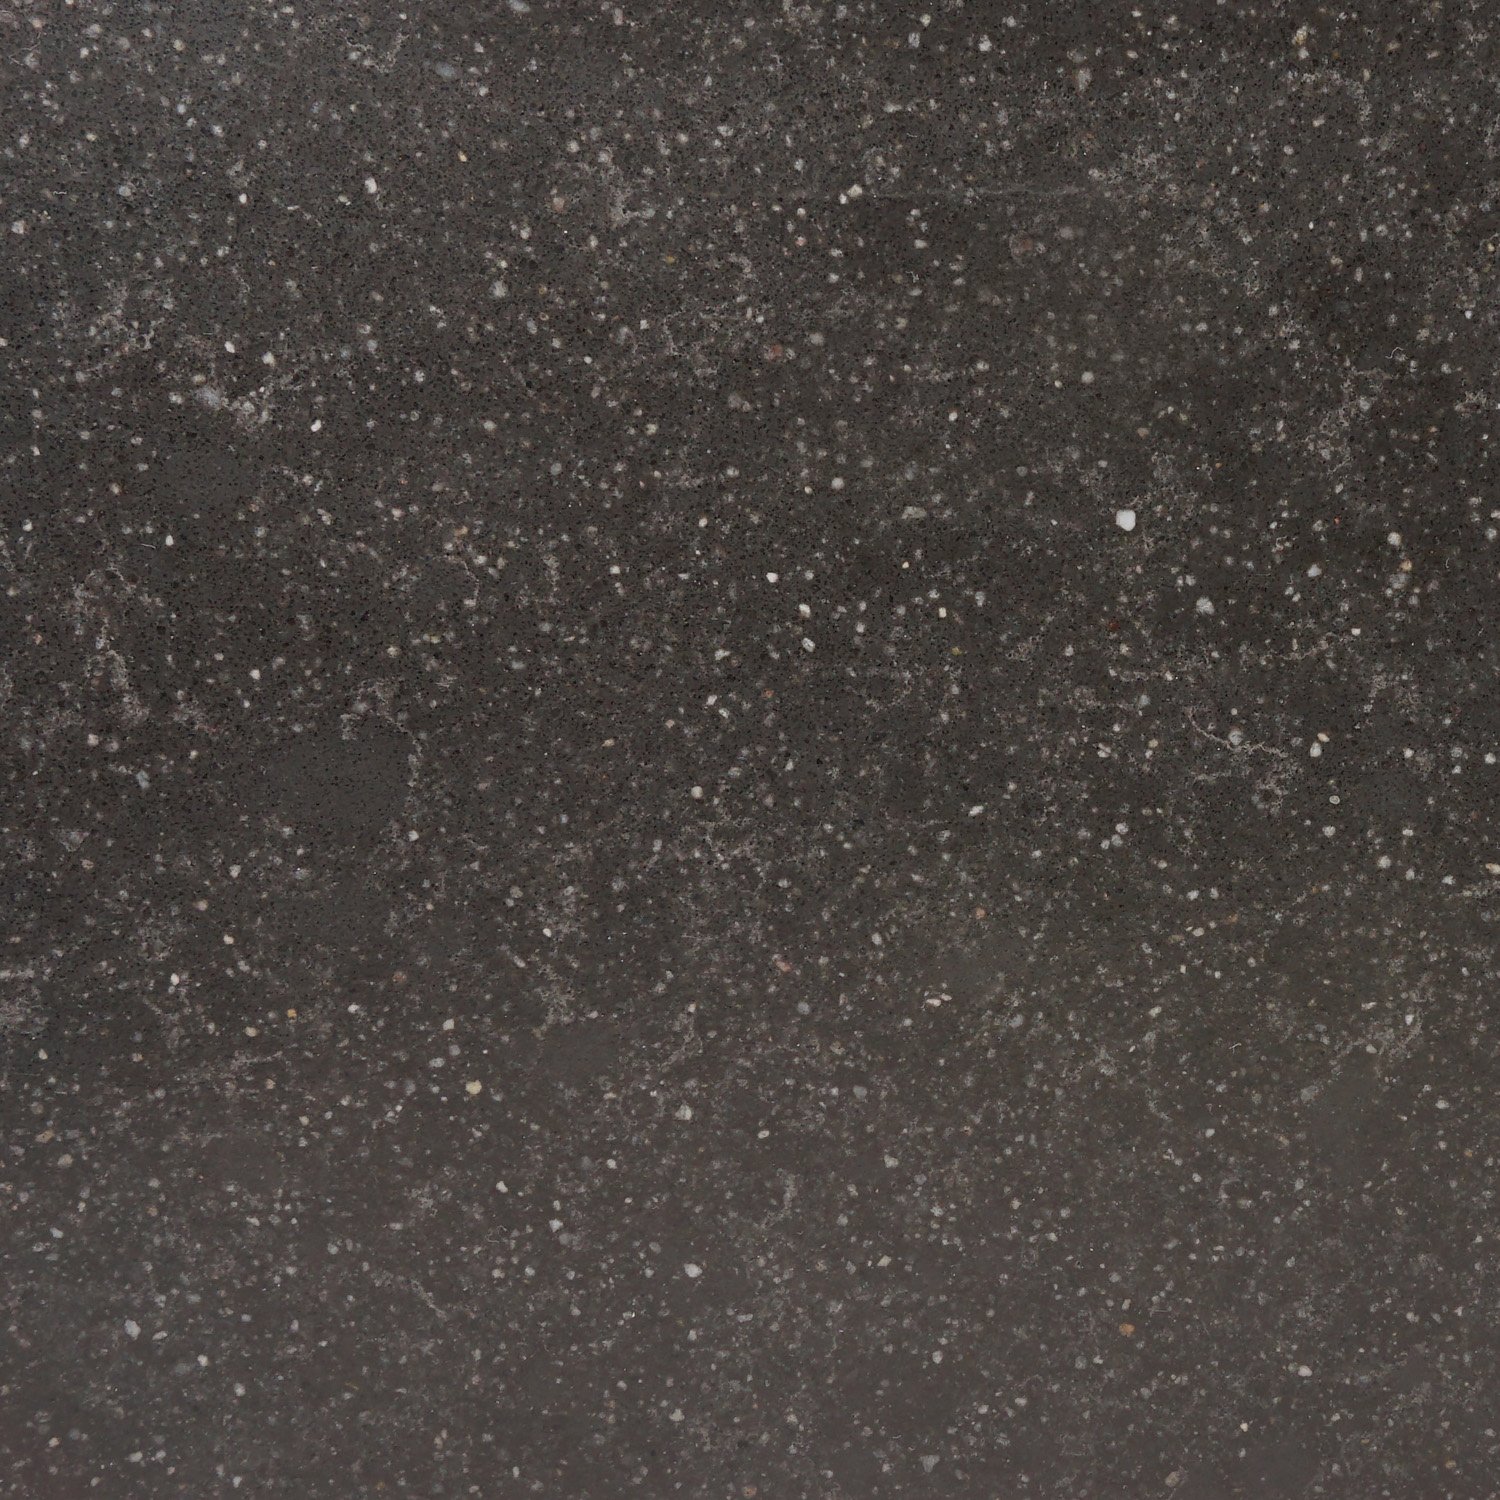  Vensterbank kwartscomposiet Belgisch hardsteen look - OP MAAT - 2 cm dik - 10-70 cm breed - 10-230 cm lang -  Gepolijst quartz composiet hardsteen imitatie